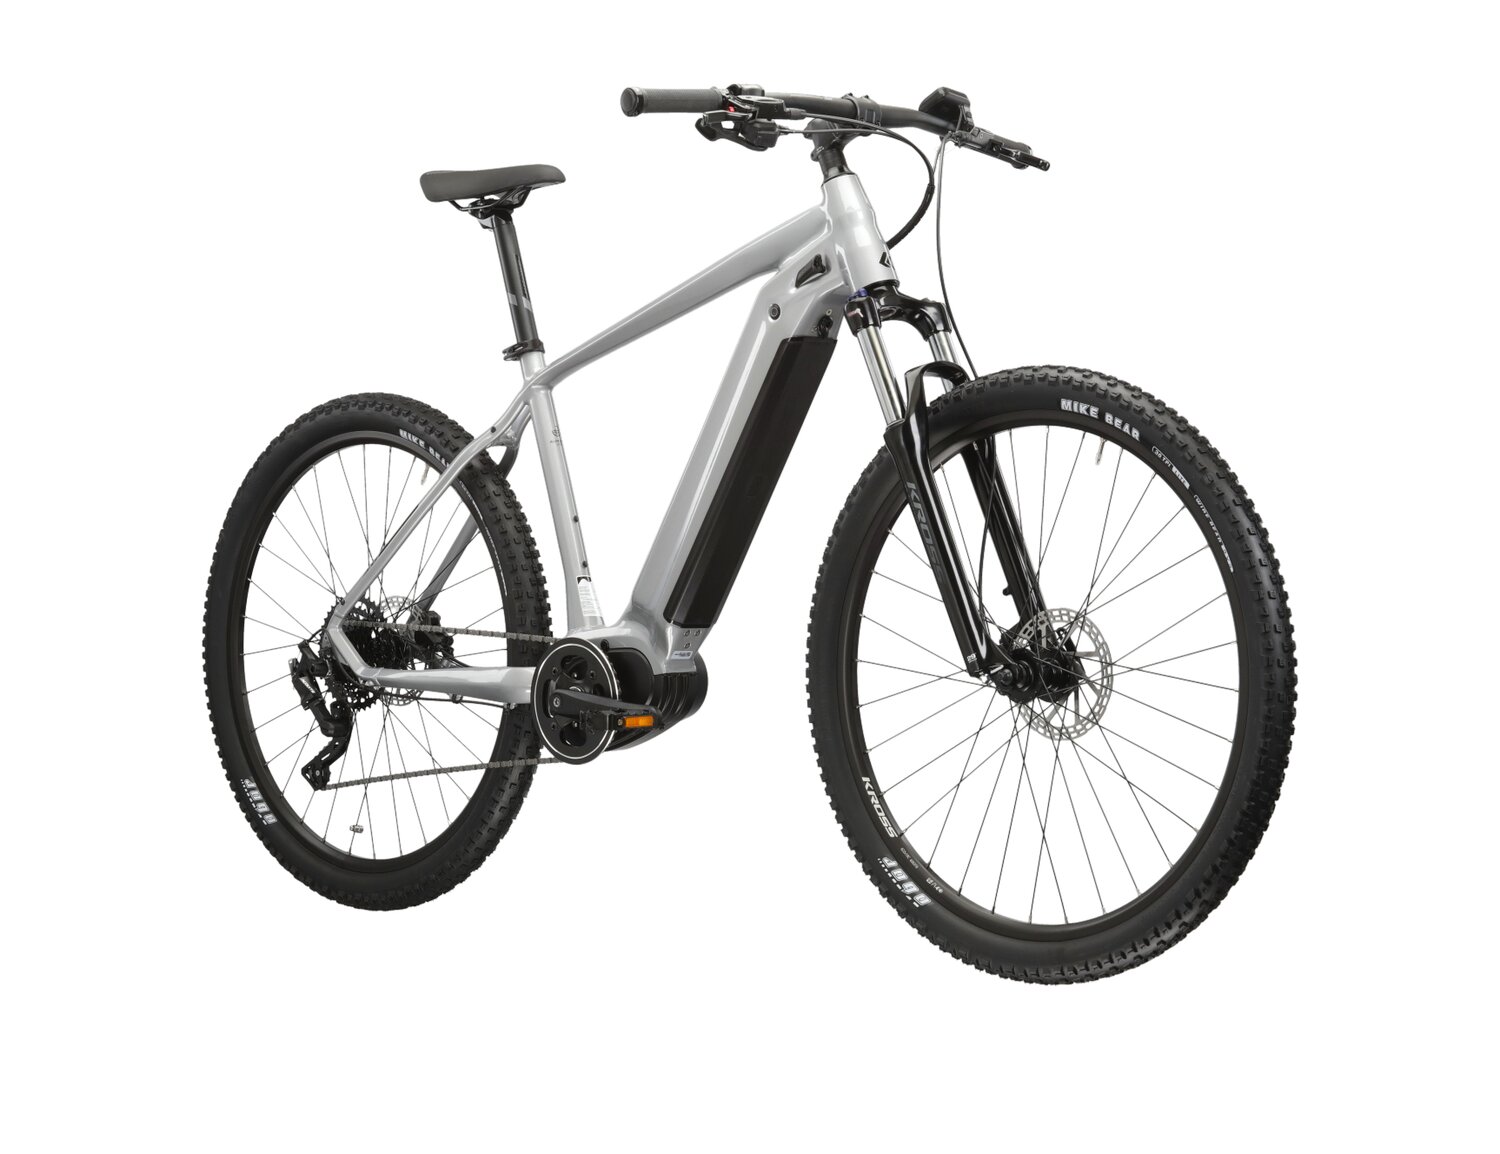 Elektryczny rower górski MTB Kross Hexagon Boost 3.0 576 Wh na aluminiowej ramie w kolorze srebrnym wyposażony w osprzęt Microshift i napęd elektryczny Bafang